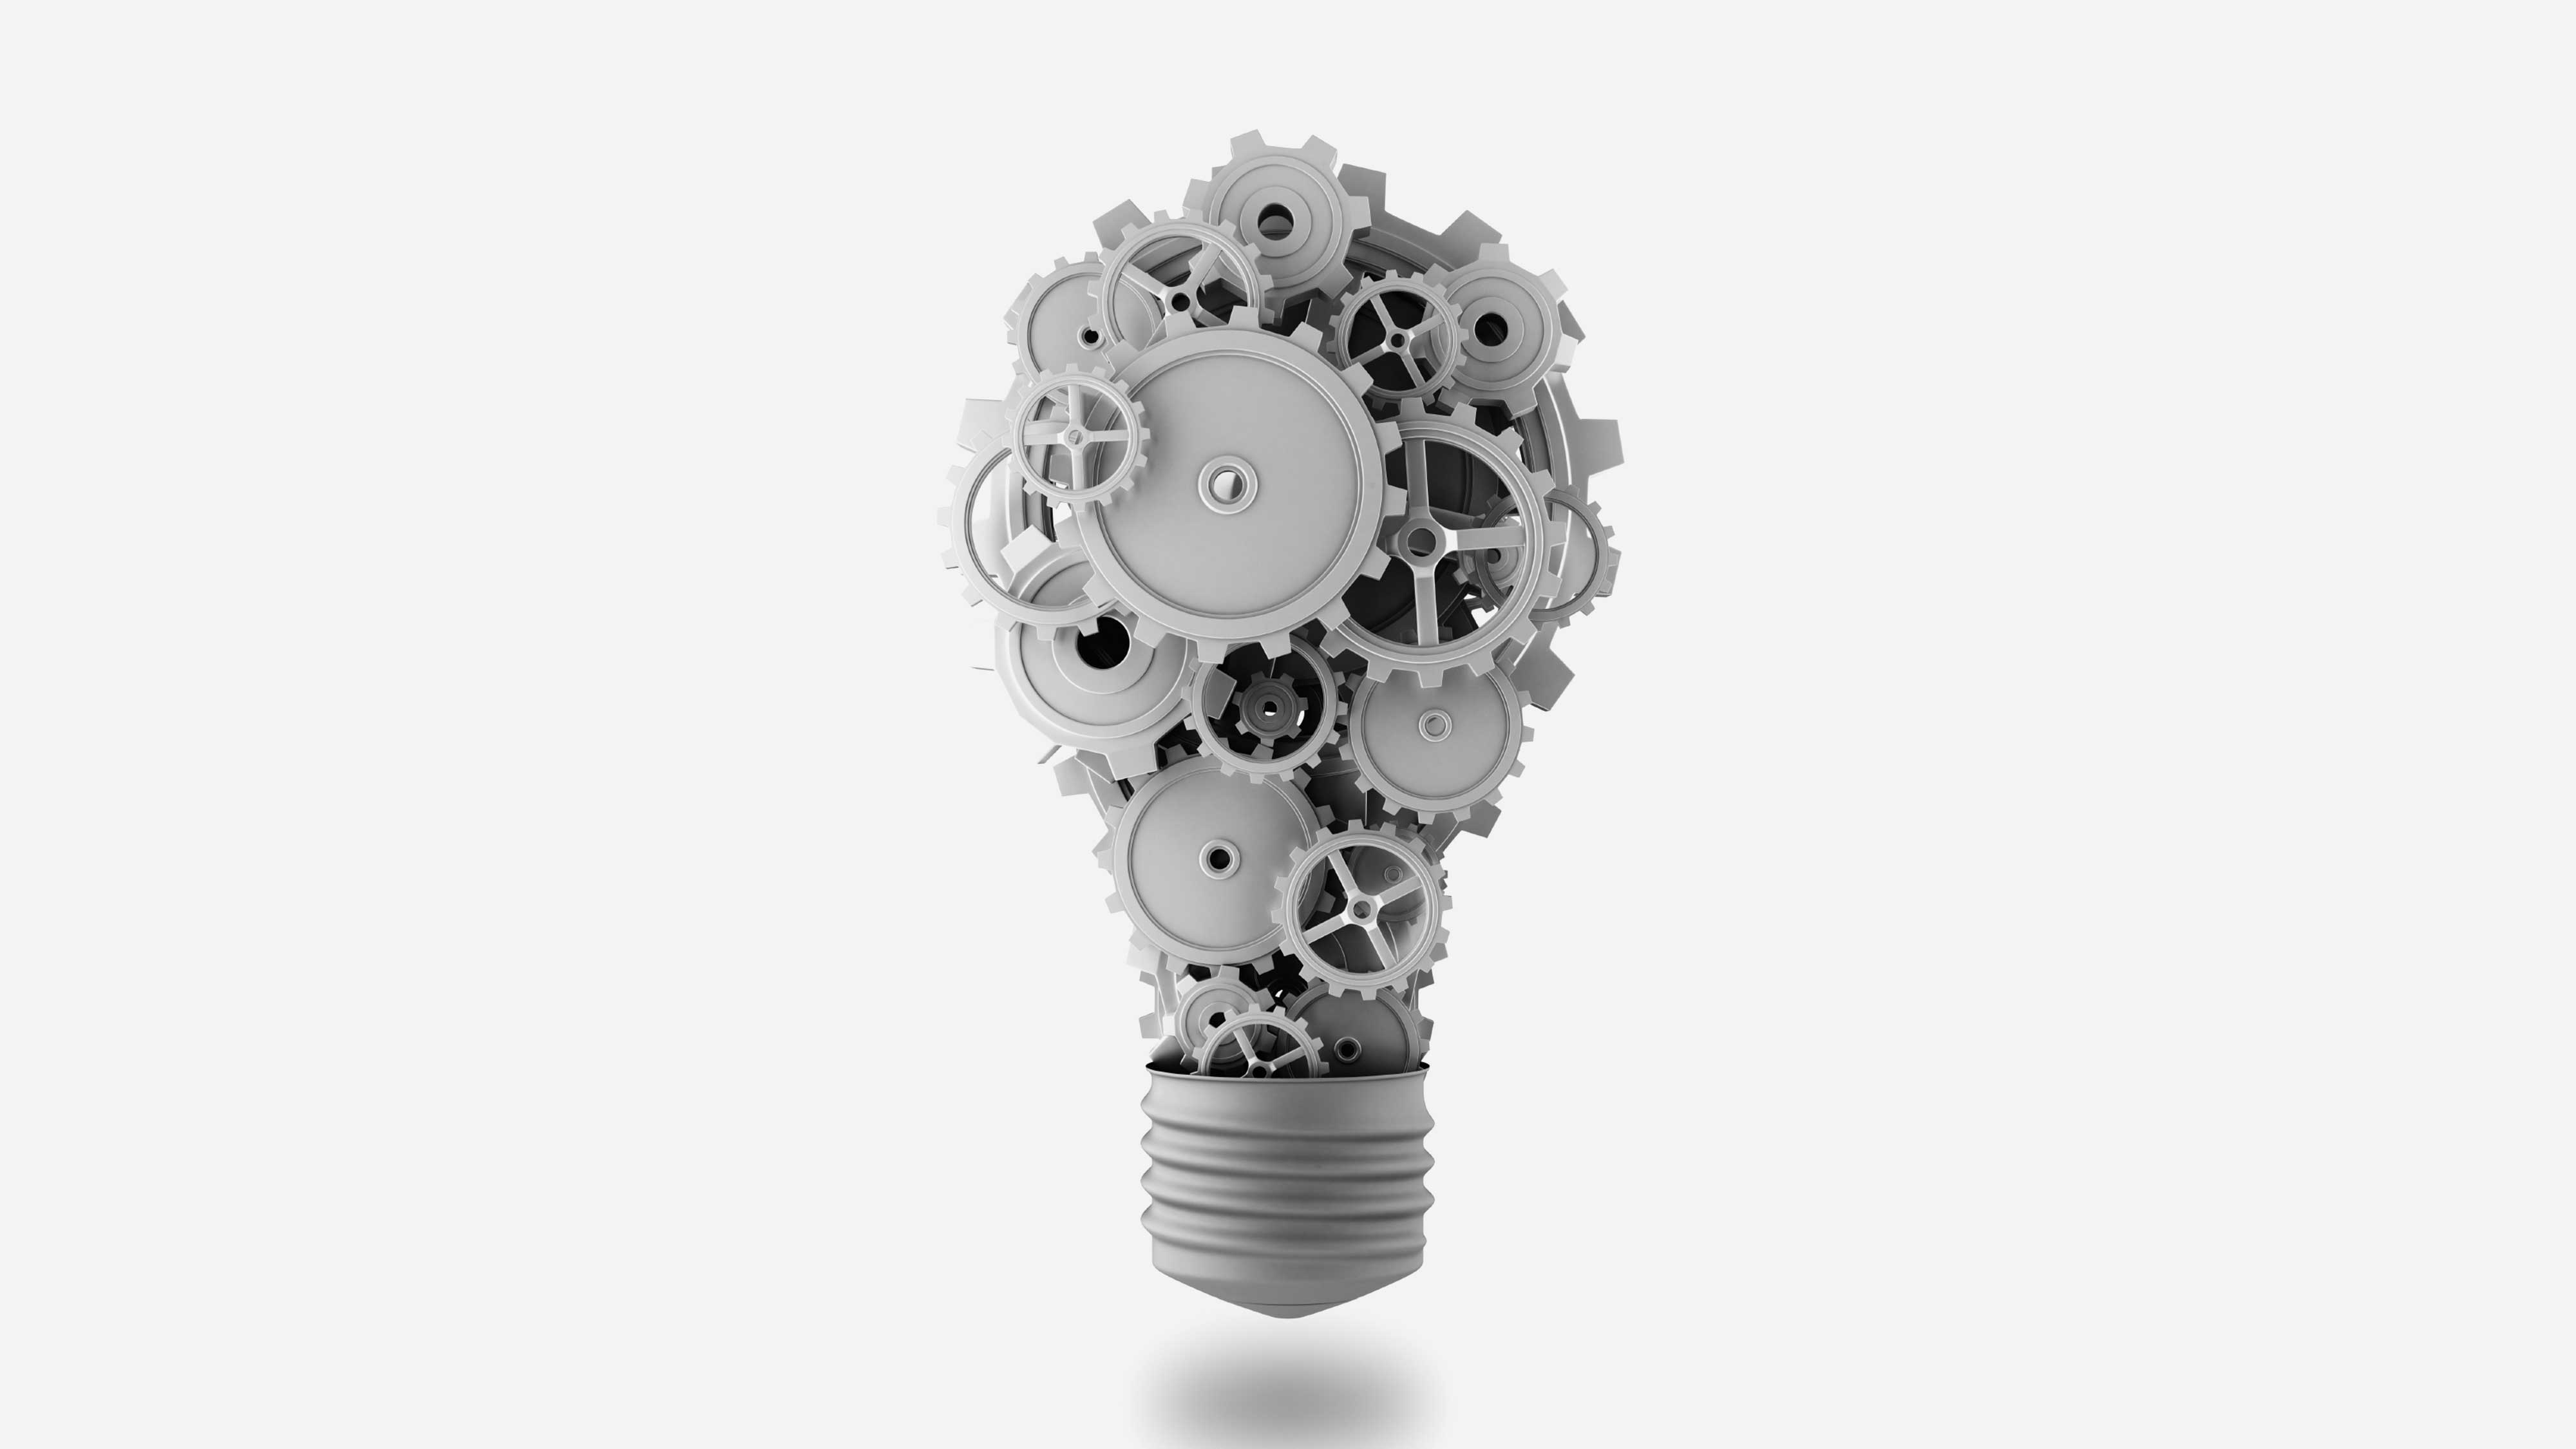 lightbulb made of gears